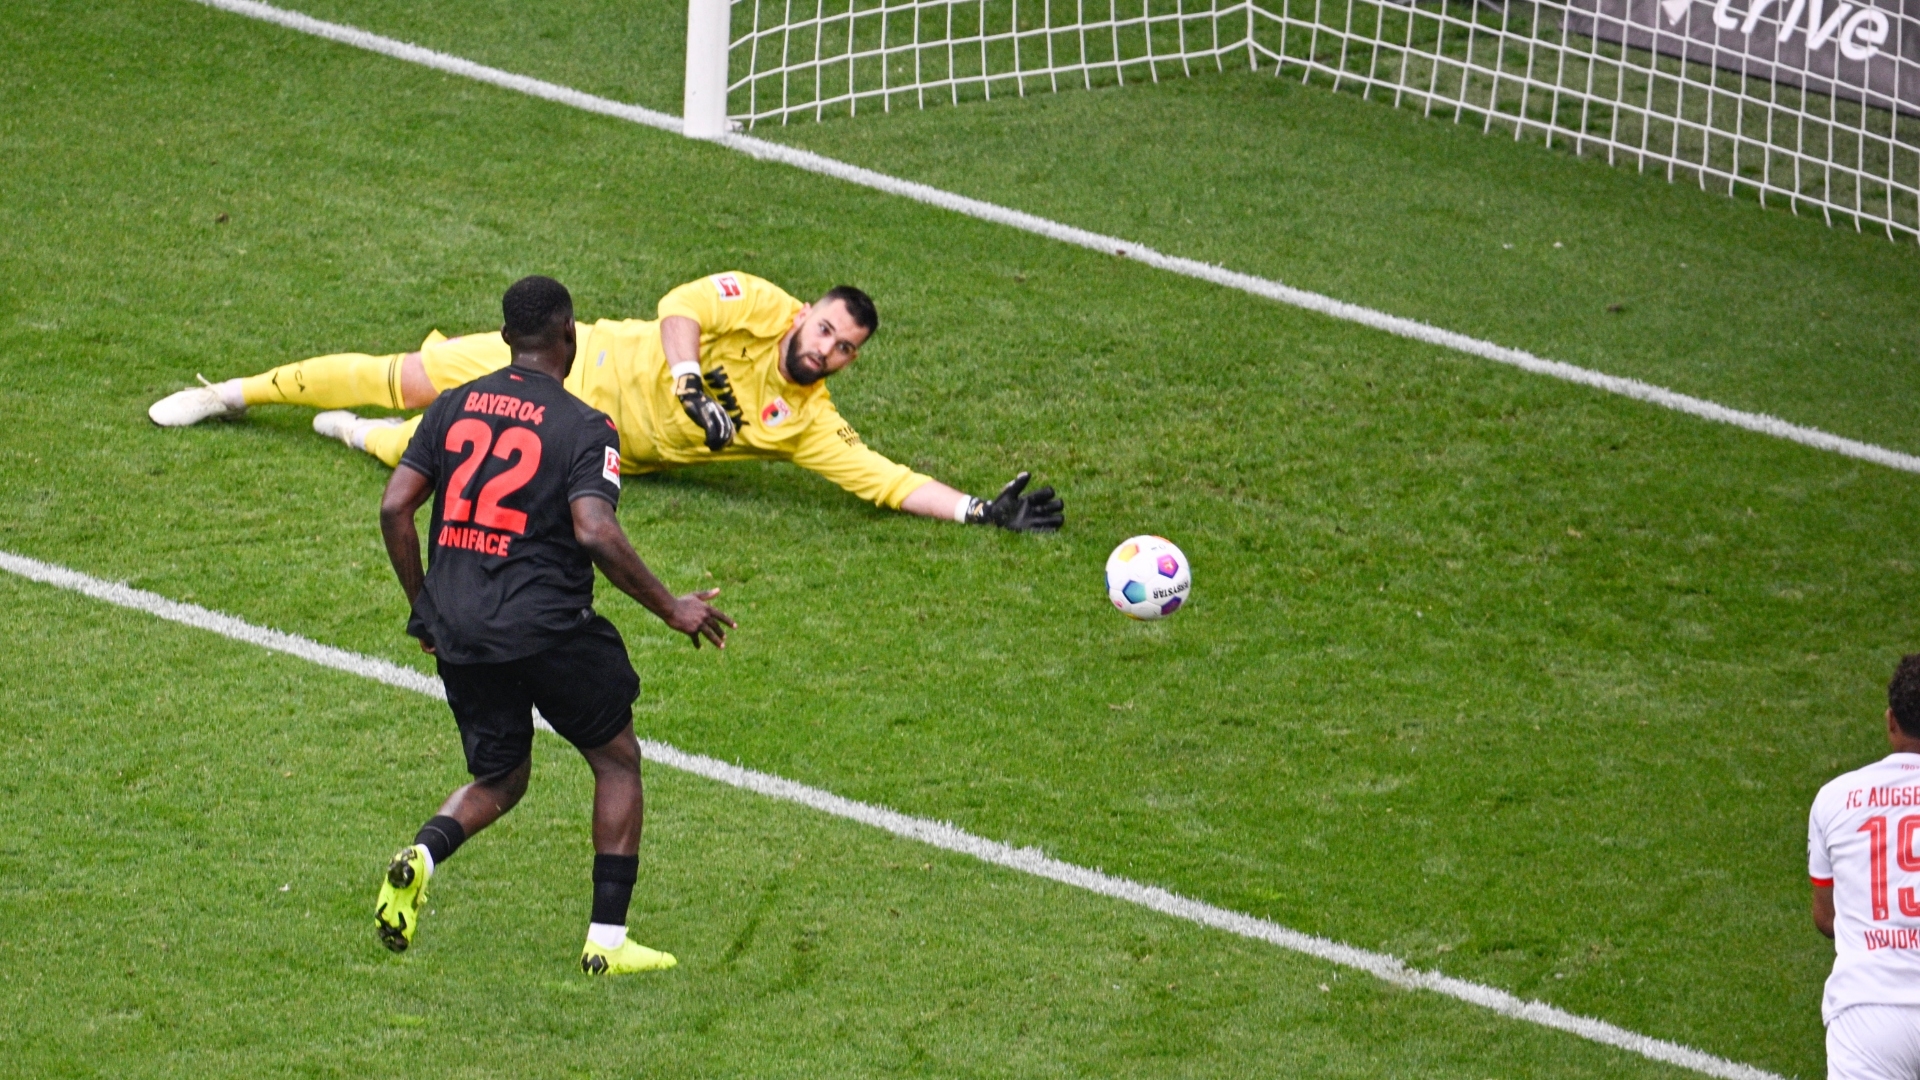 Goalkeeper error gifts Leverkusen the lead vs. Augsburg